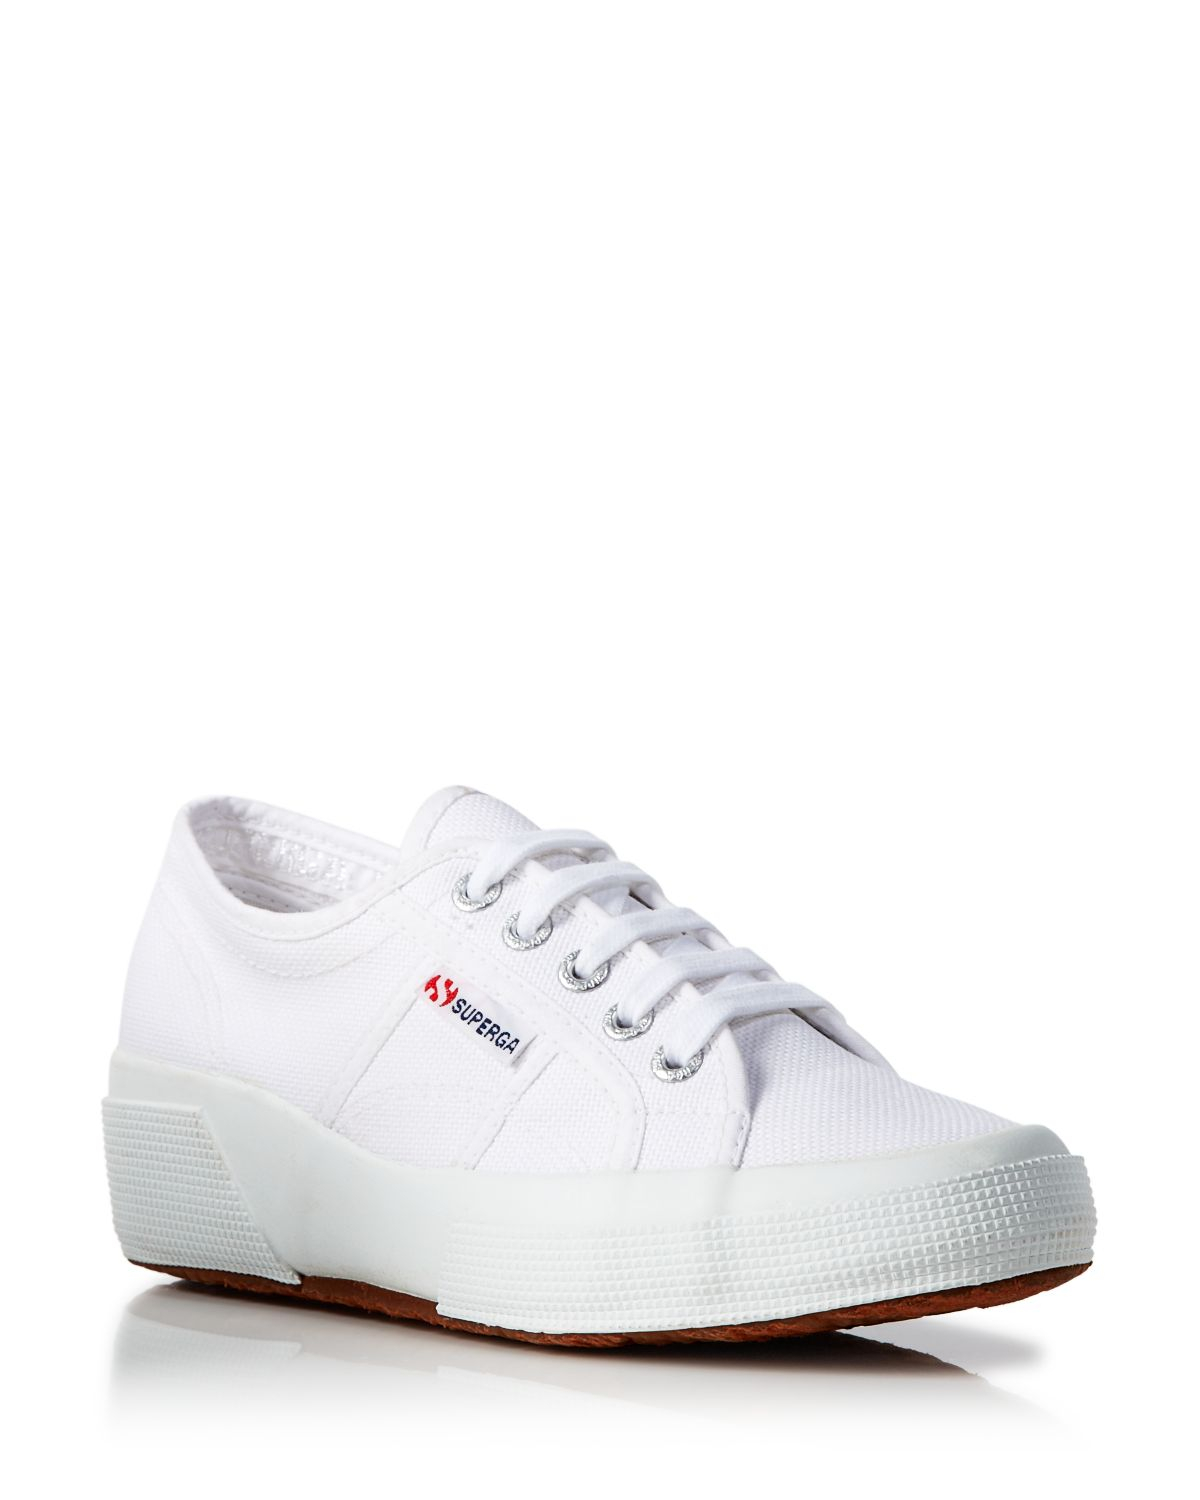 white wedge heel sneakers